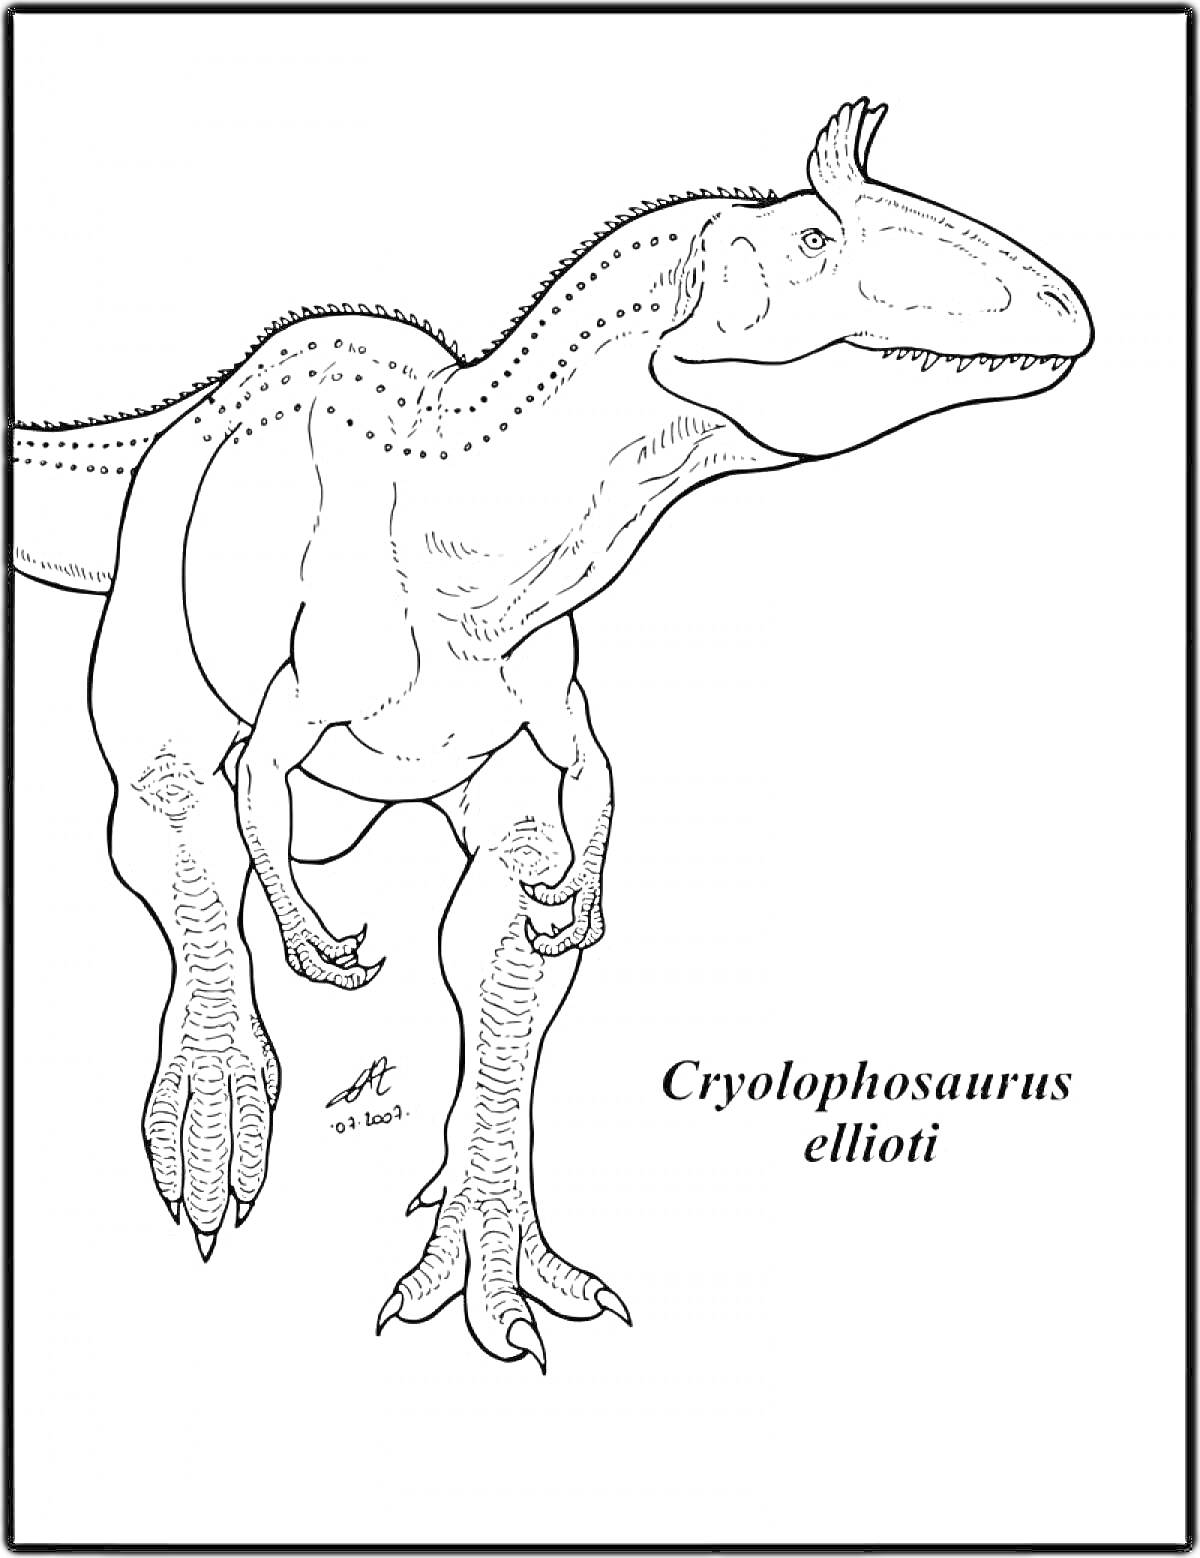 Cryolophosaurus ellioti, контурное изображение динозавра